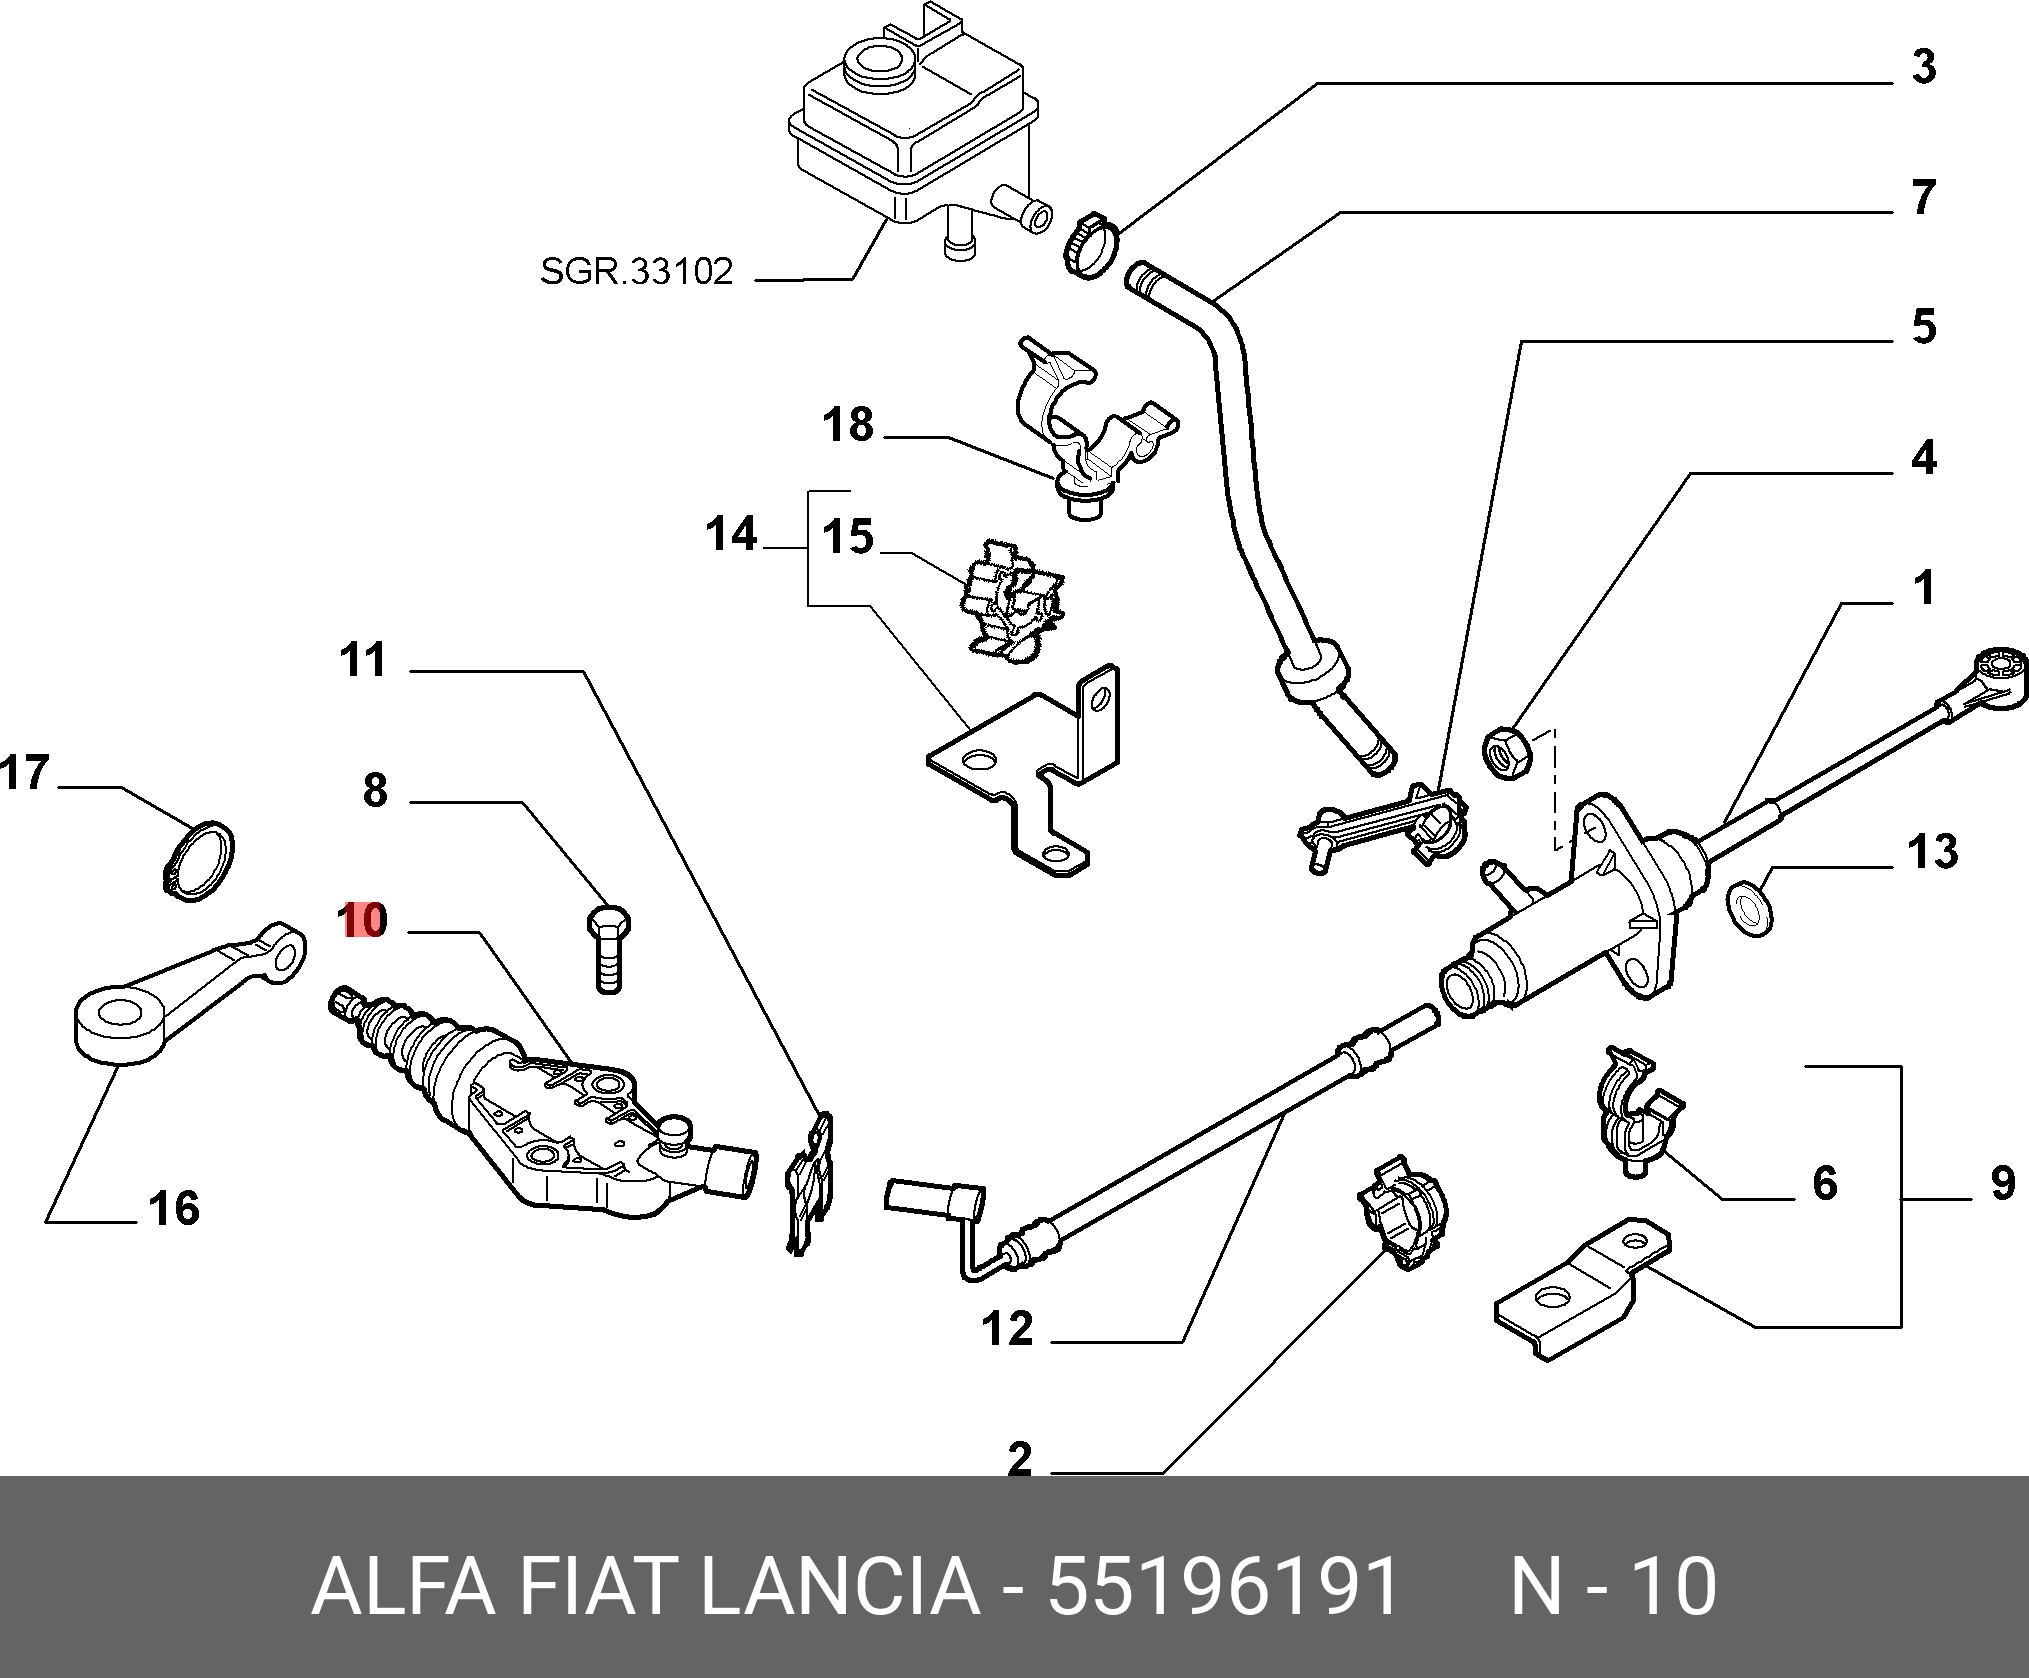 Цилиндр сцепления главный фиат. Педаль сцепление Fiat Albea 1.4 схема. Главный цилиндр сцепления Фиат Альбеа 1.4. Рабочий цилиндр сцепления Фиат Альбеа 1.4. Фиат Альбеа привод сцепления.